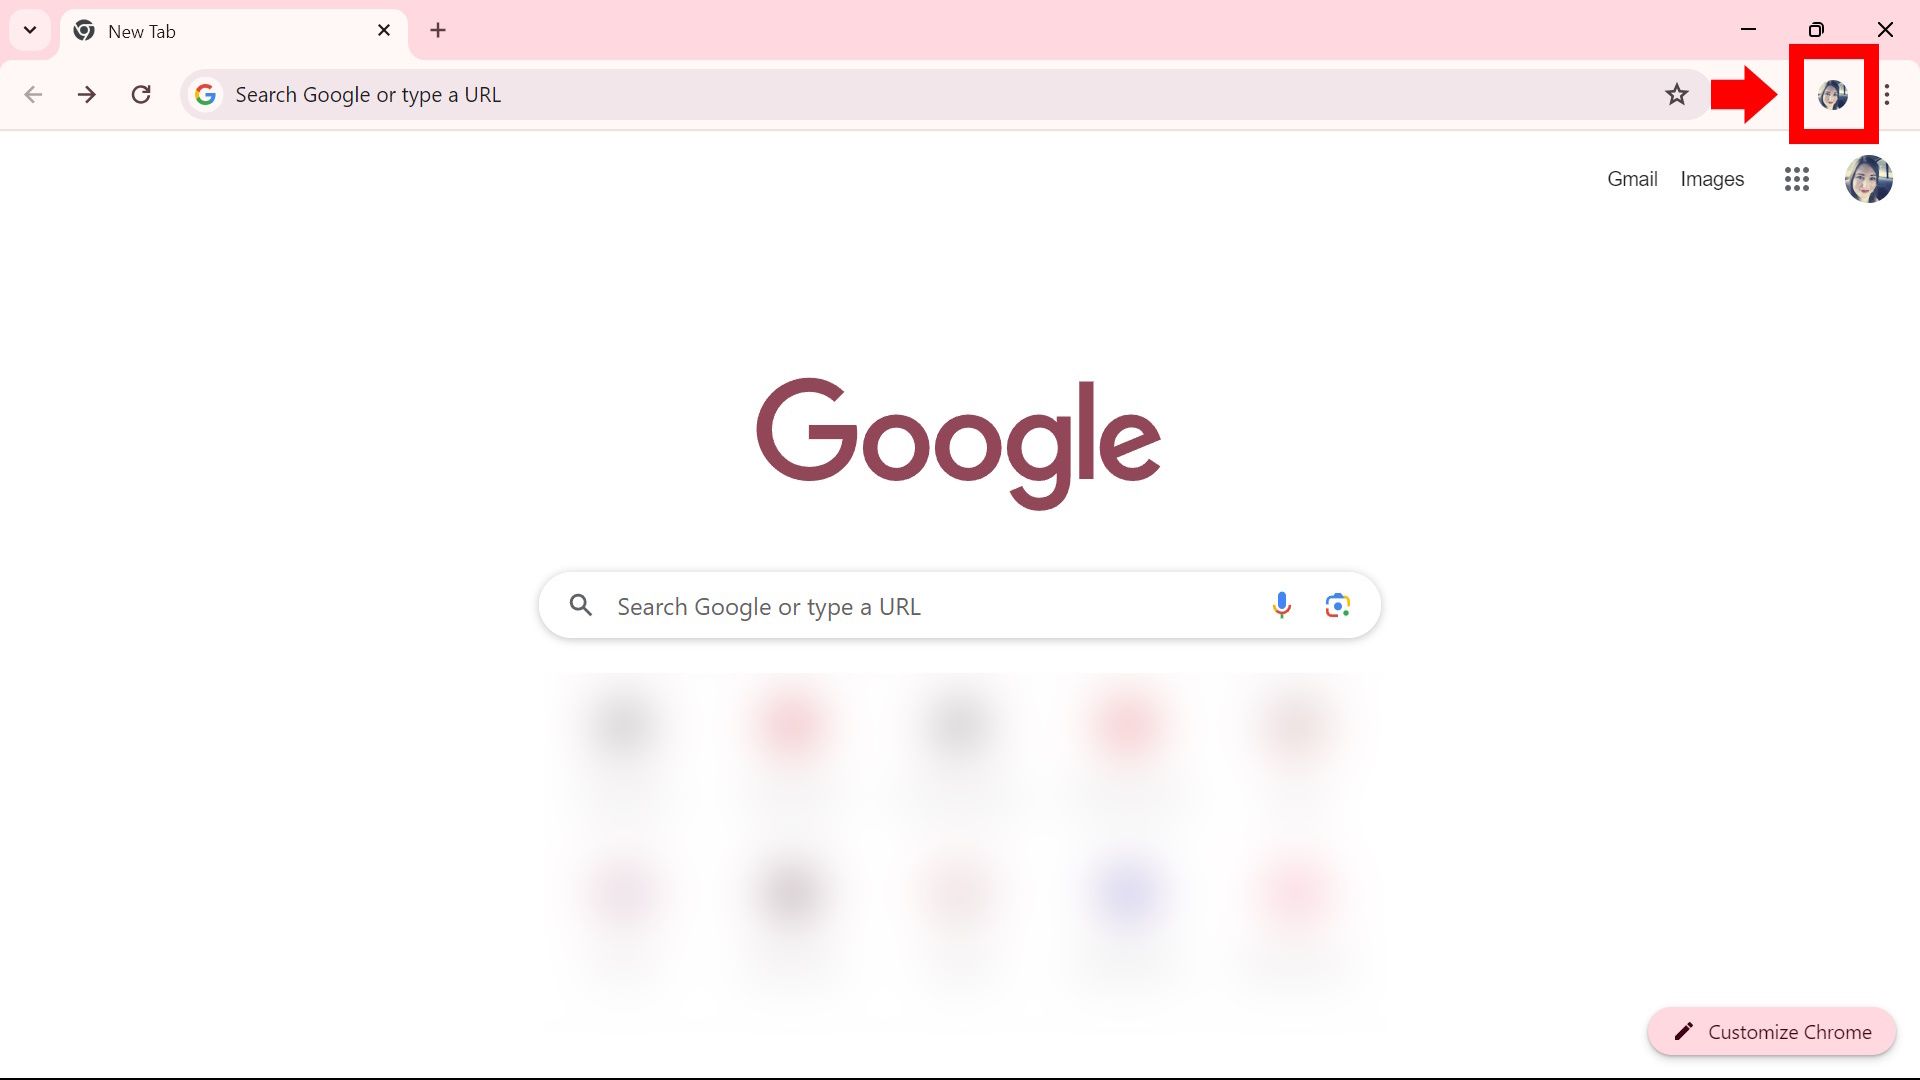 seta sólida vermelha apontando para o ícone do perfil conectado próximo à barra de endereço no Google Chrome